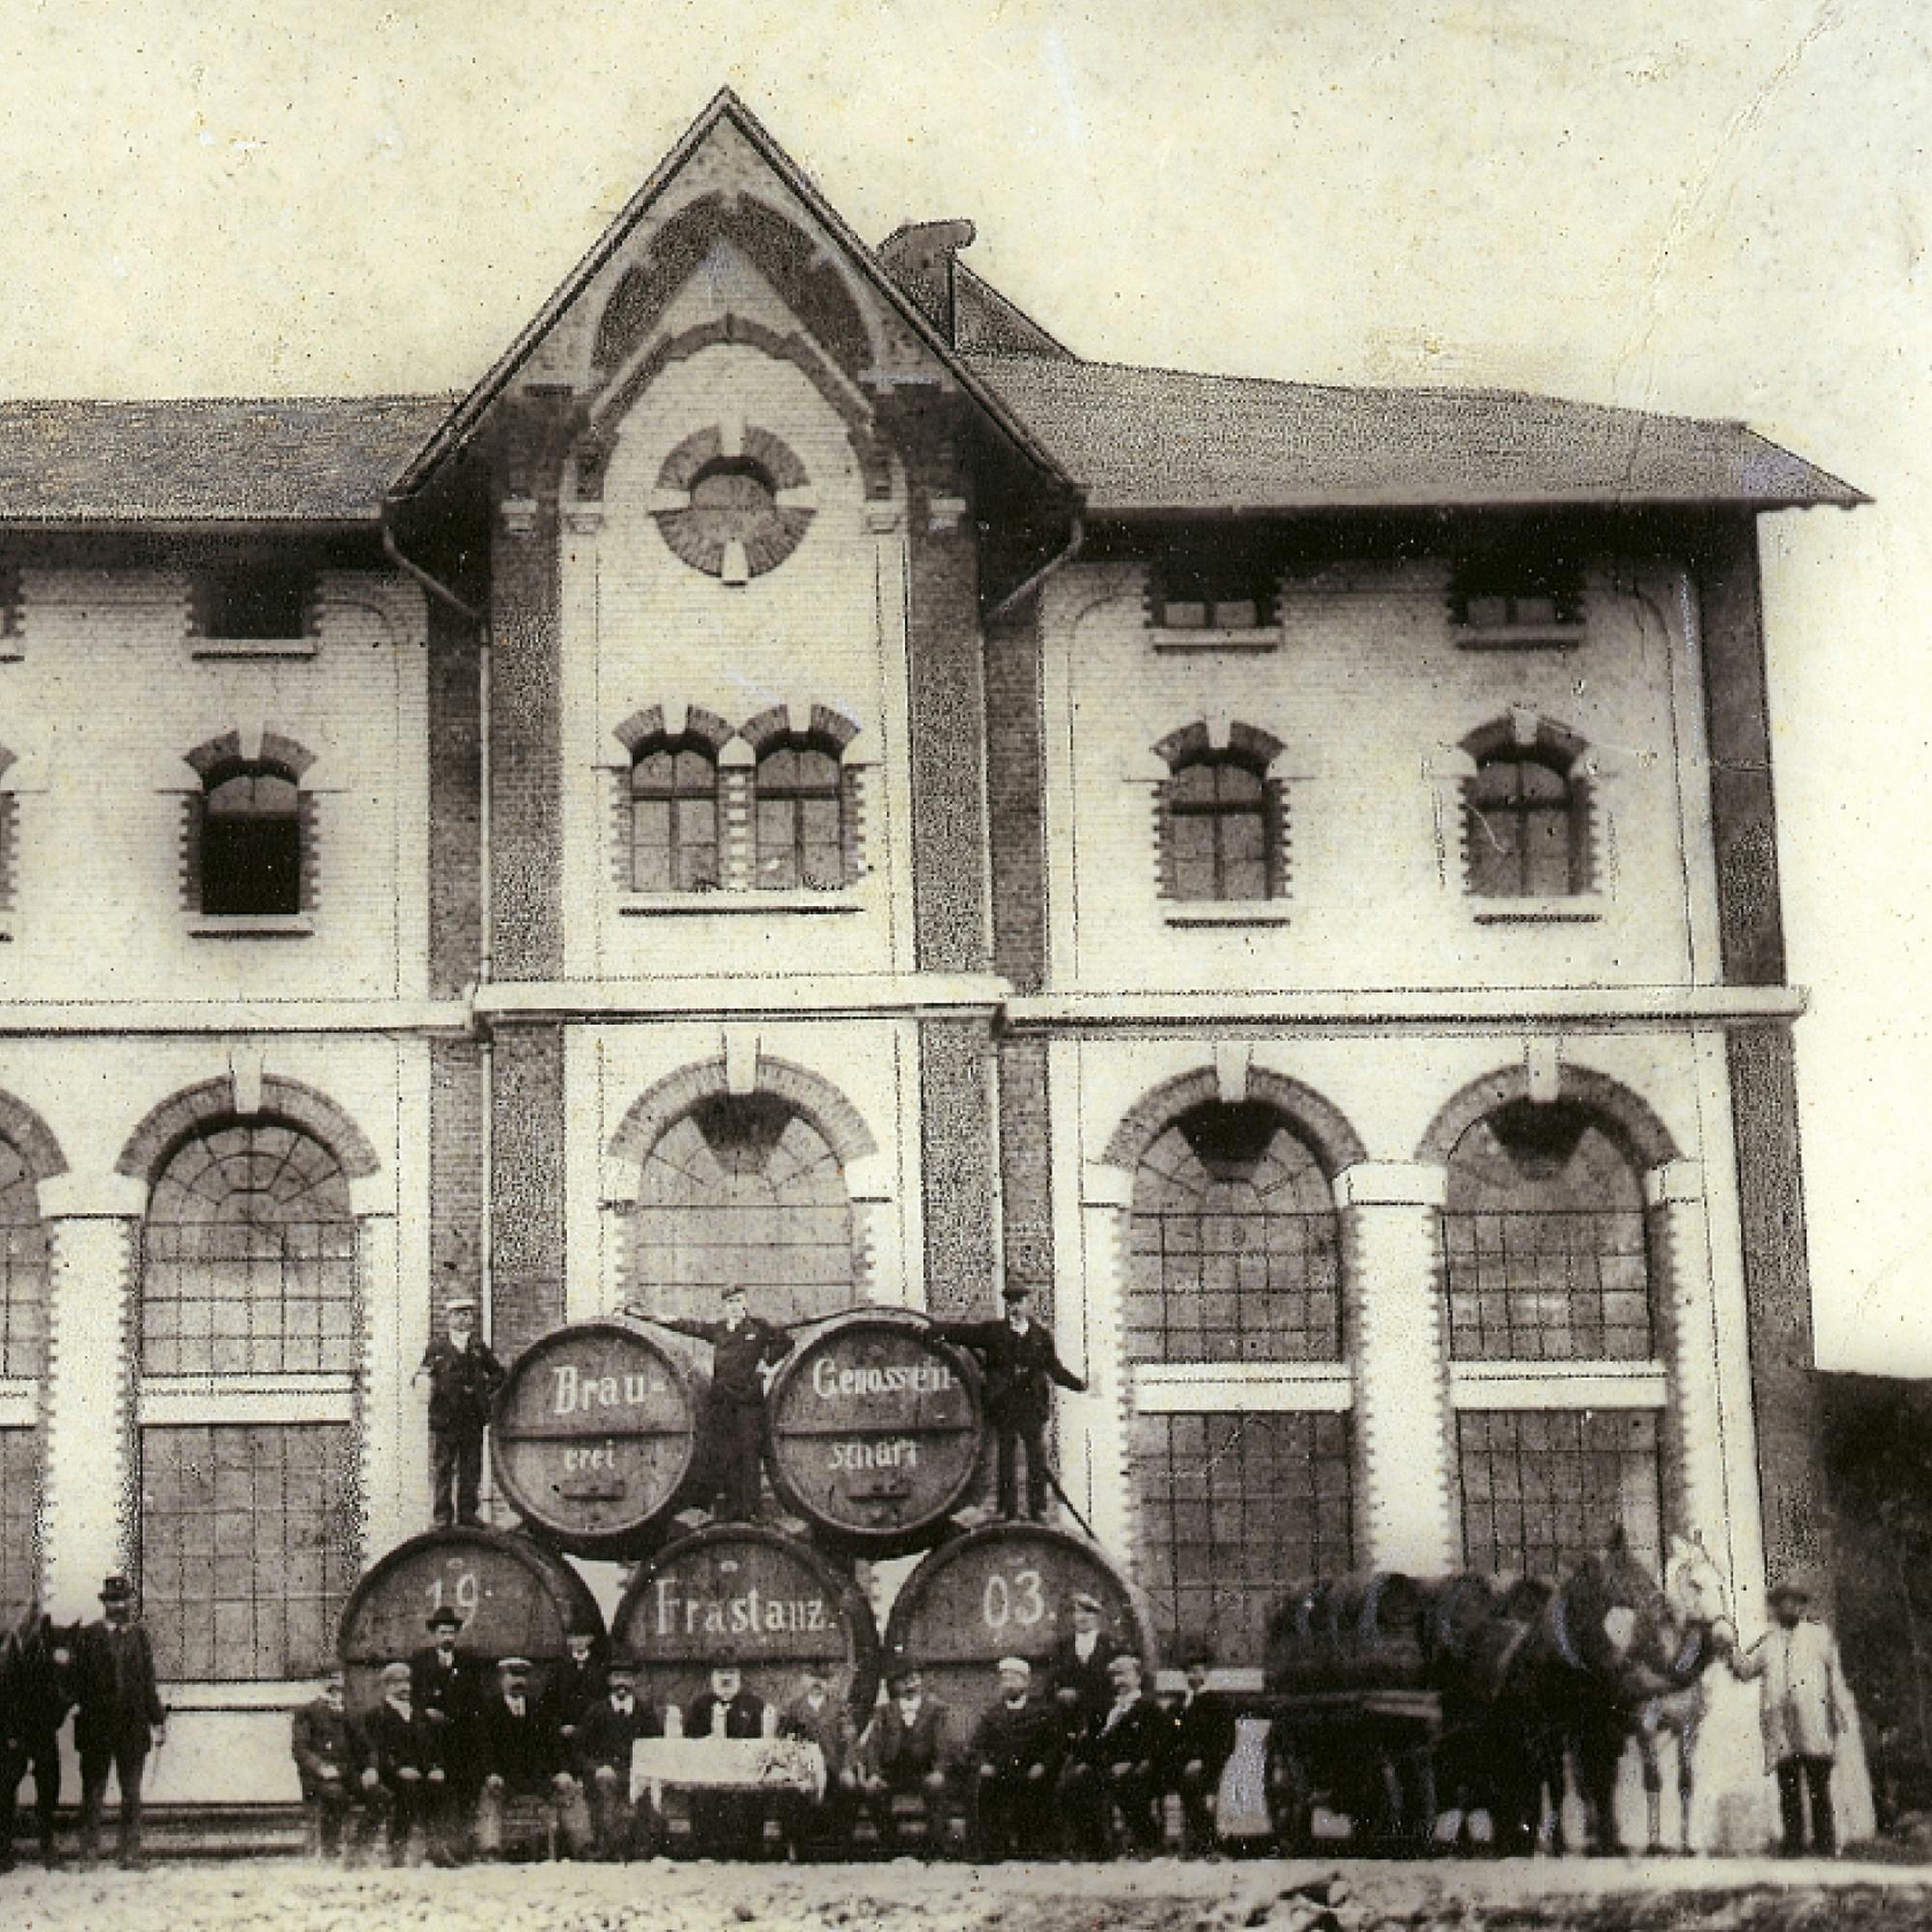 Historisches Foto der Frastanzer Brauerei im Jahr 1903. Bierfässer und Arbeiter vor dem alten Backsteingebäude. © gobiq